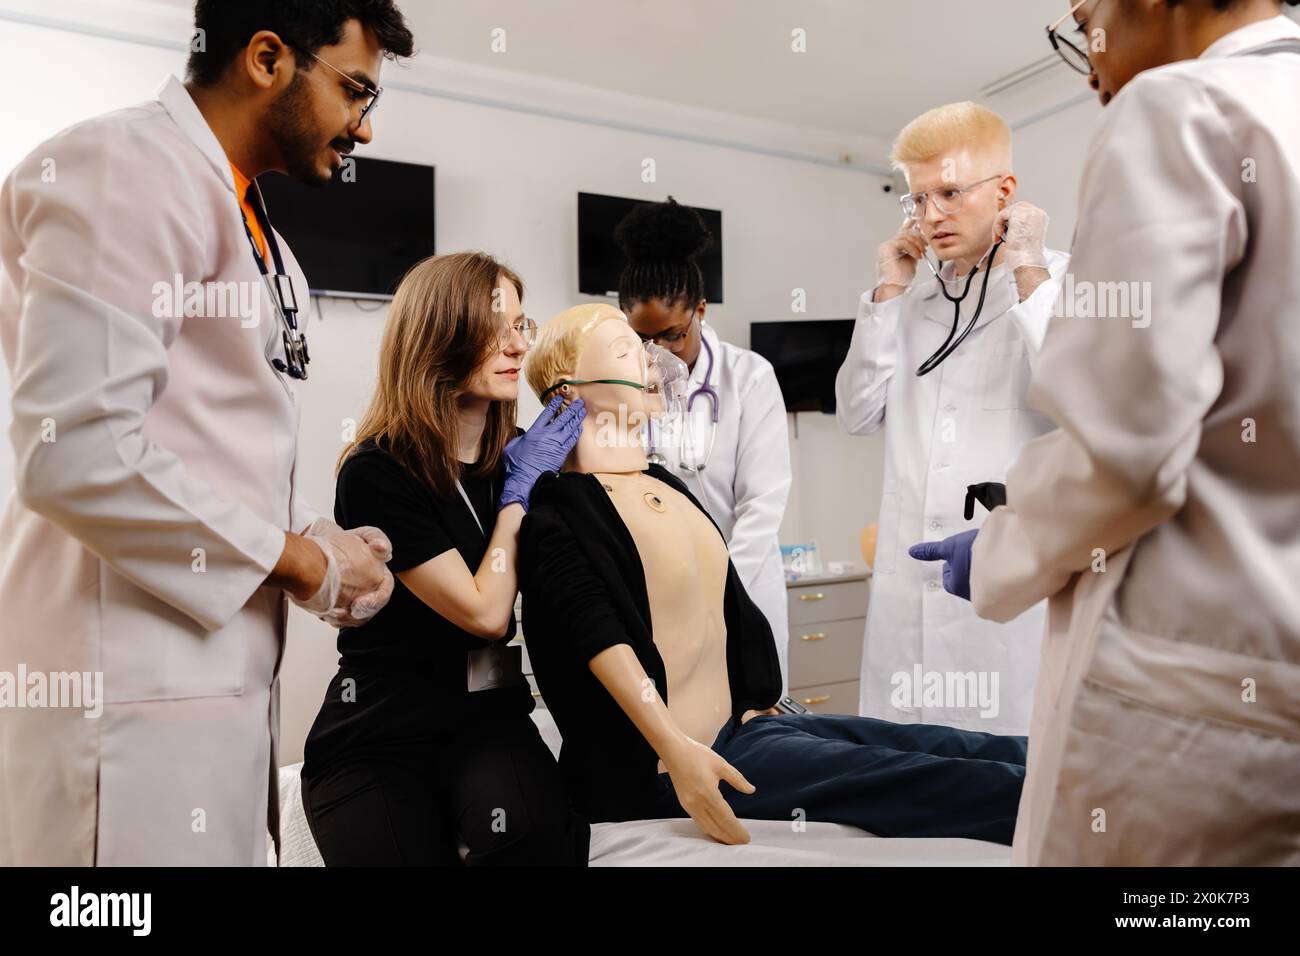 Un groupe de médecins, portant des blouses de laboratoire et des stéthoscopes, sont rassemblés autour d'un mannequin médical, discutant et examinant celui-ci dans un cadre hospitalier. Banque D'Images